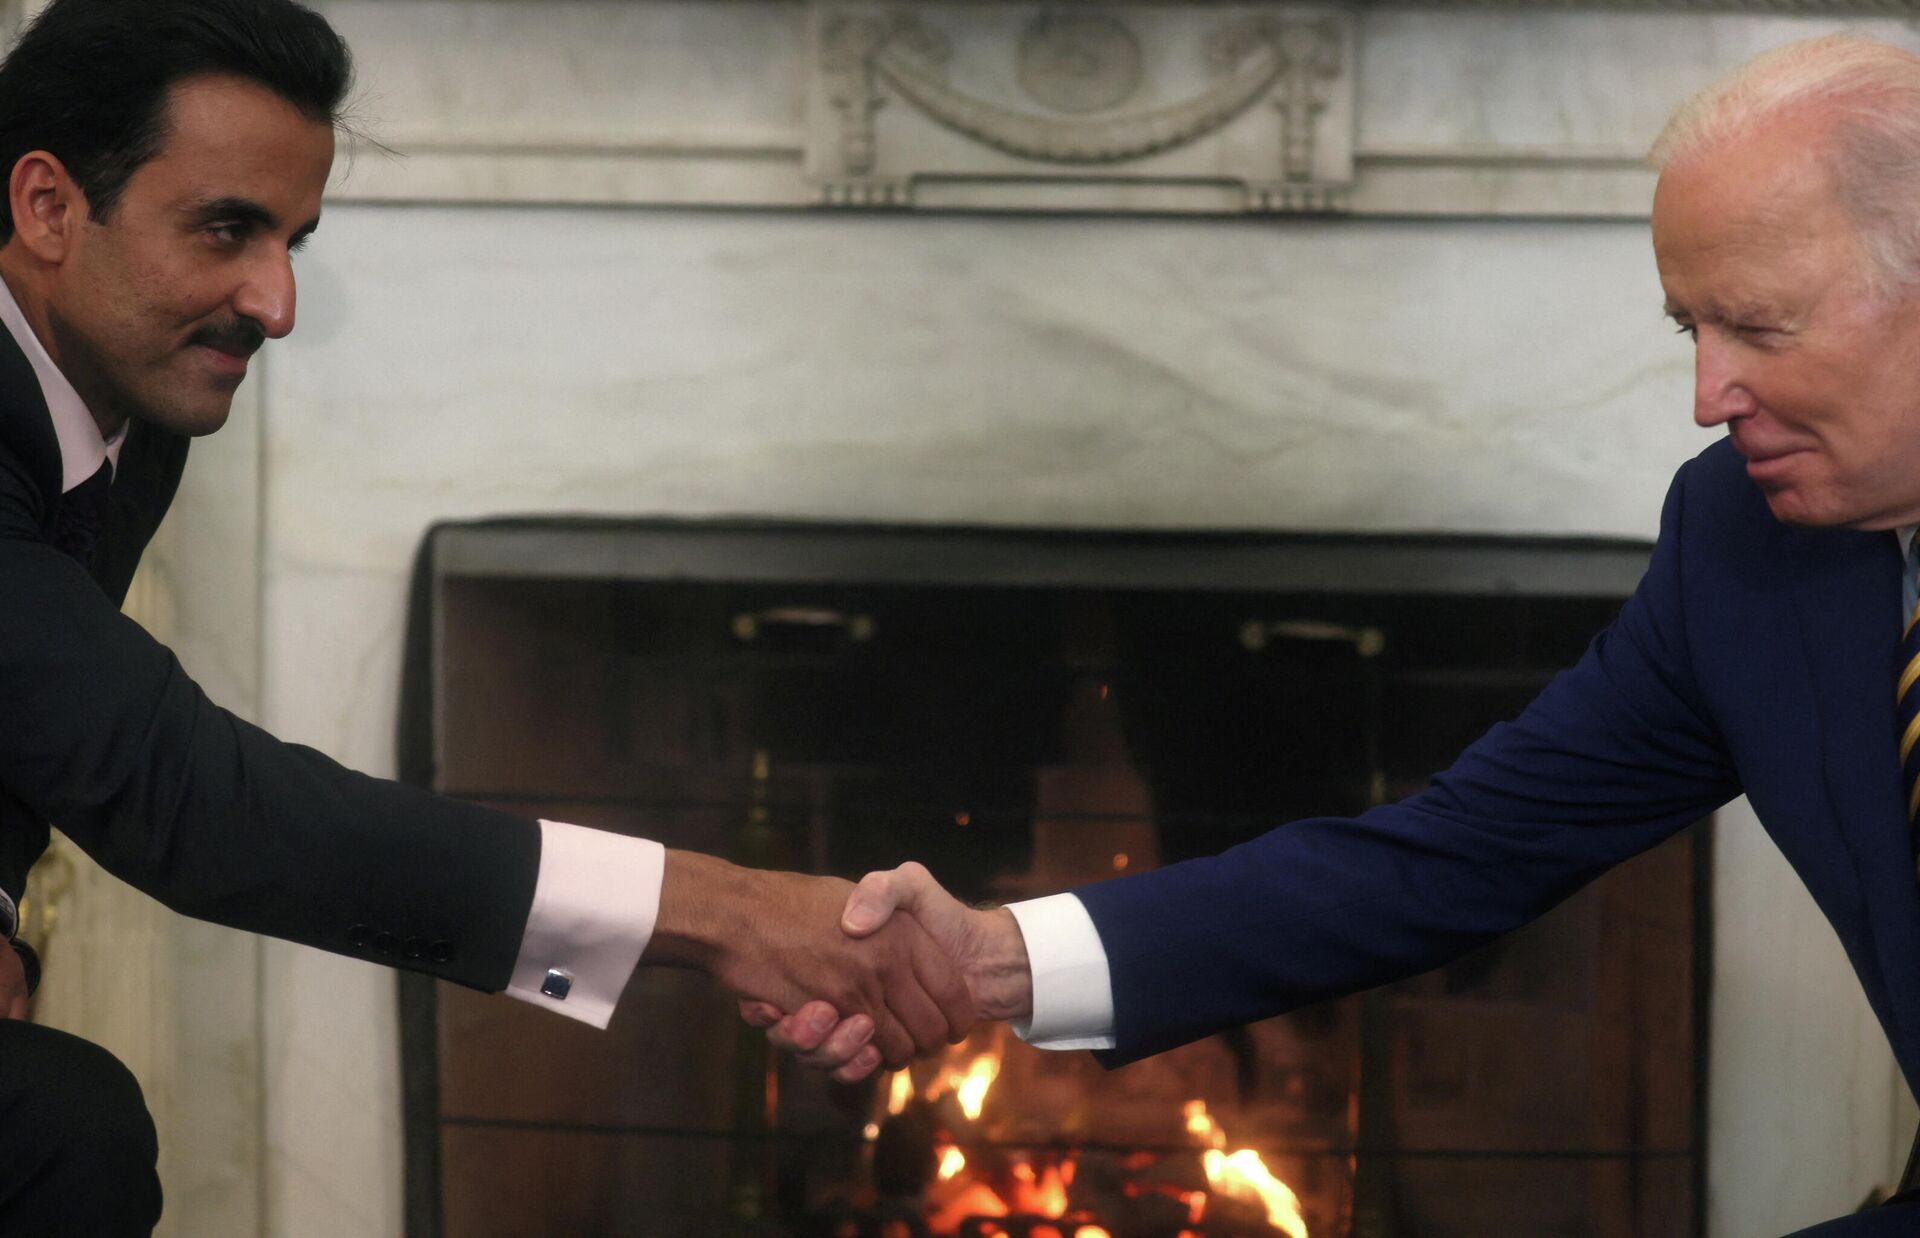 Chefe de Estado do Catar, Tamim Bin Hamad Al-Thani, aperta a mão do presidente dos EUA, Joe Biden, durante uma reunião bilateral no Salão Oval da Casa Branca em Washington, EUA, em 31 de janeiro de 2022 - Sputnik Brasil, 1920, 31.01.2022